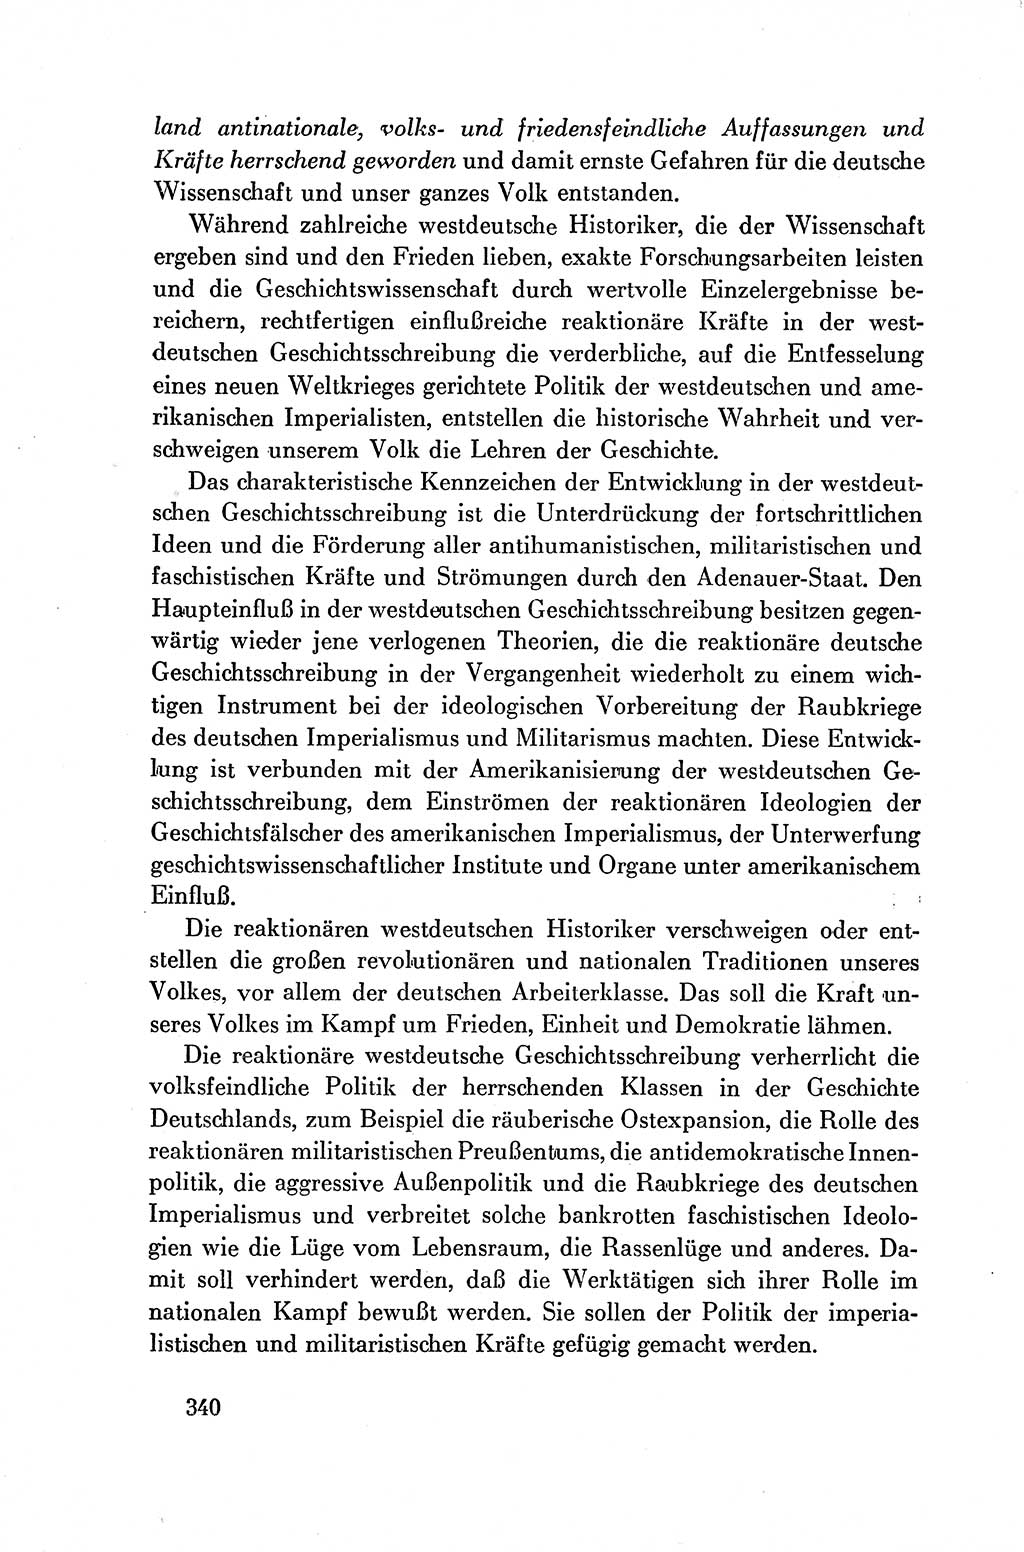 Dokumente der Sozialistischen Einheitspartei Deutschlands (SED) [Deutsche Demokratische Republik (DDR)] 1954-1955, Seite 340 (Dok. SED DDR 1954-1955, S. 340)